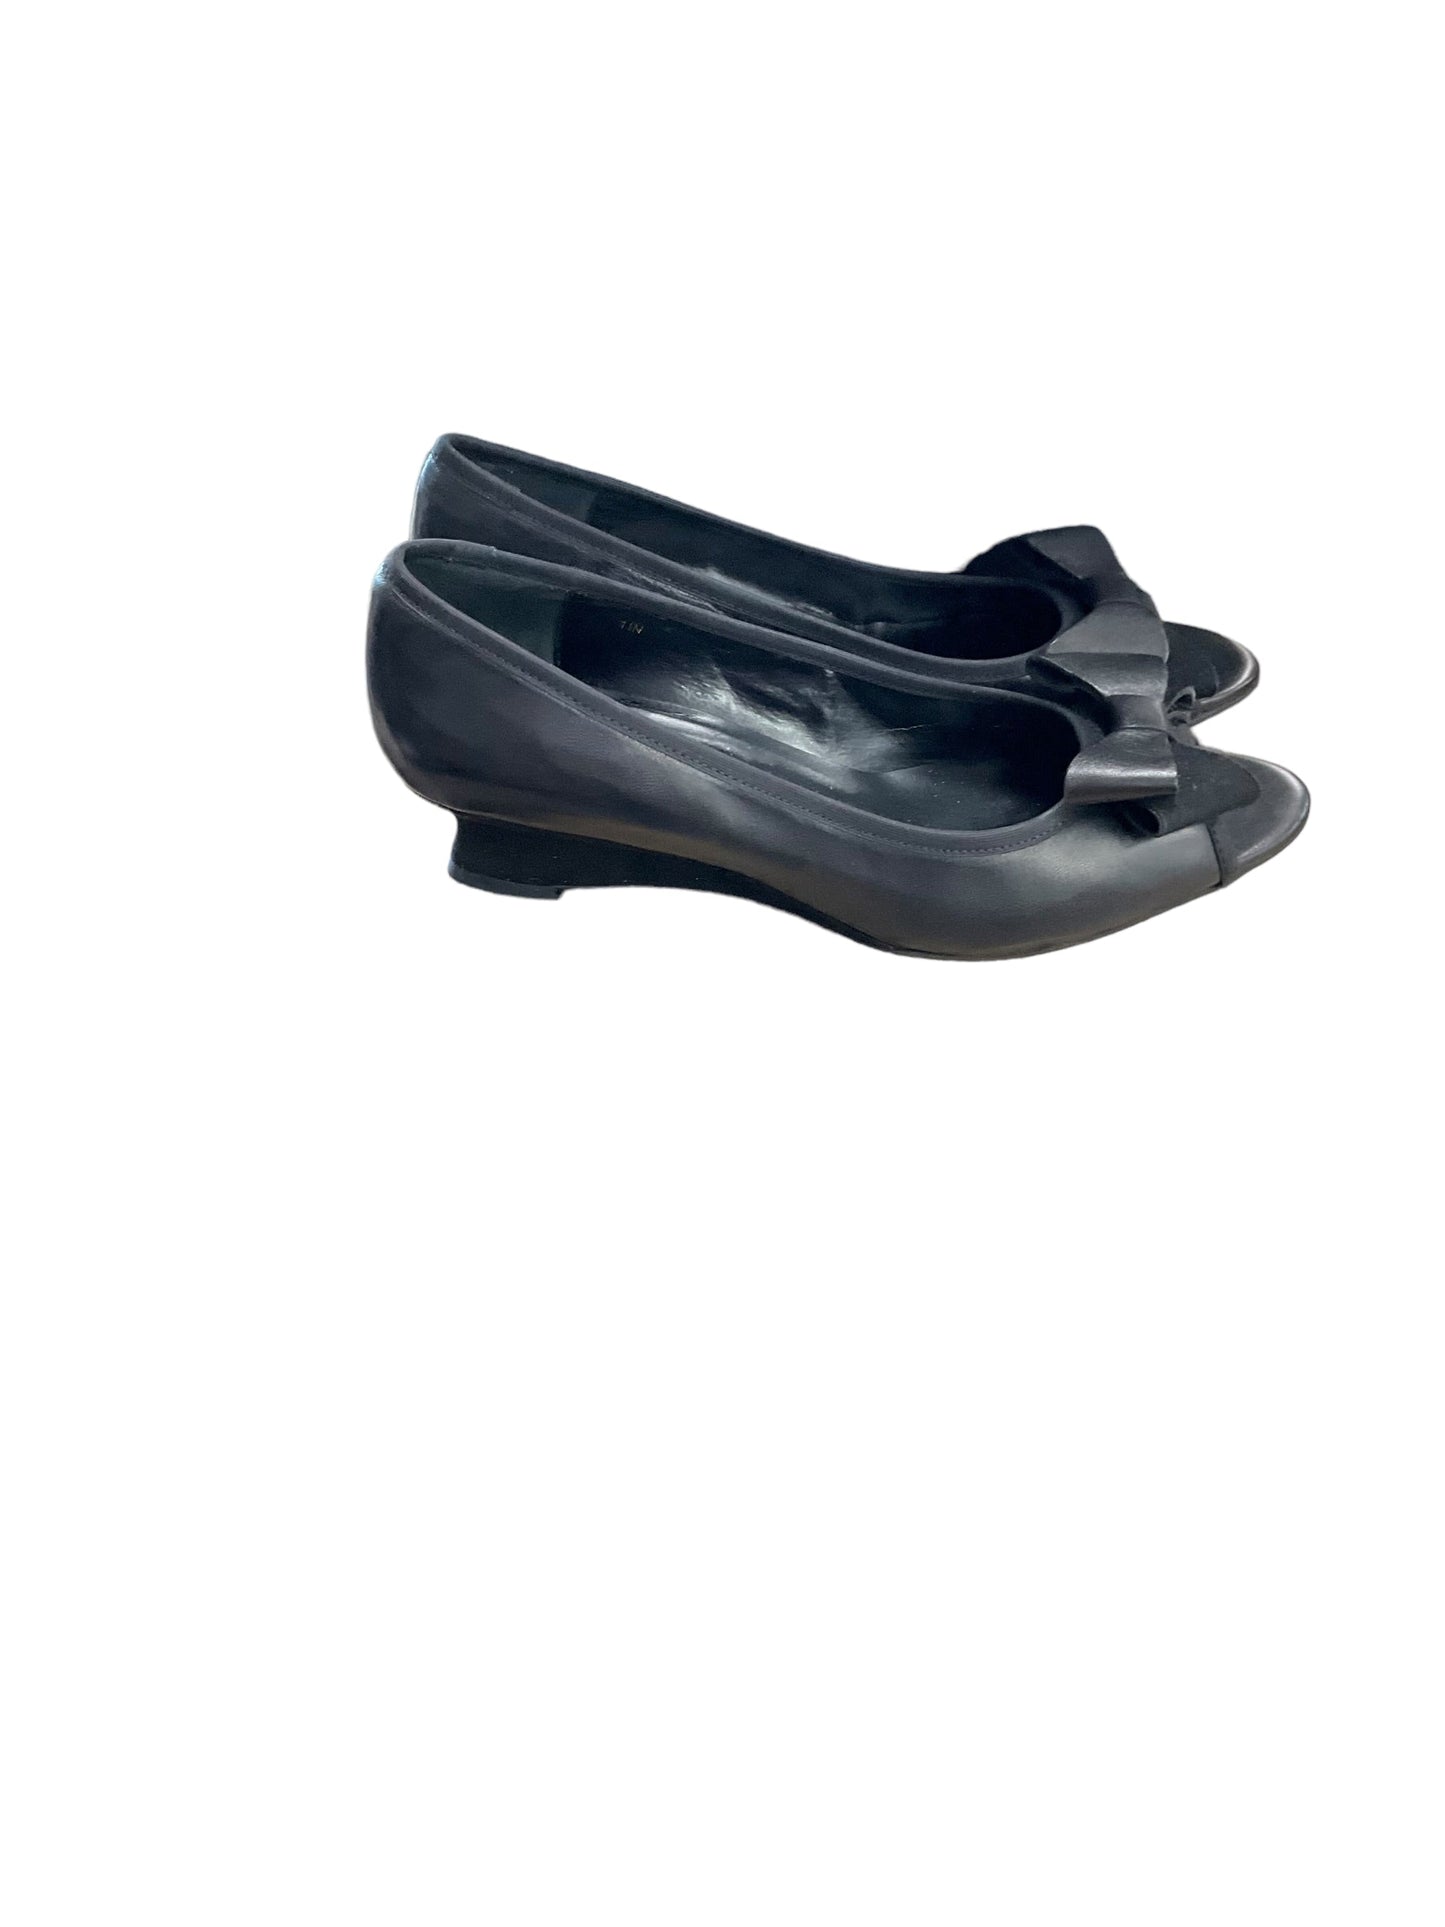 Shoes Heels Wedge By Vaneli  Size: 11